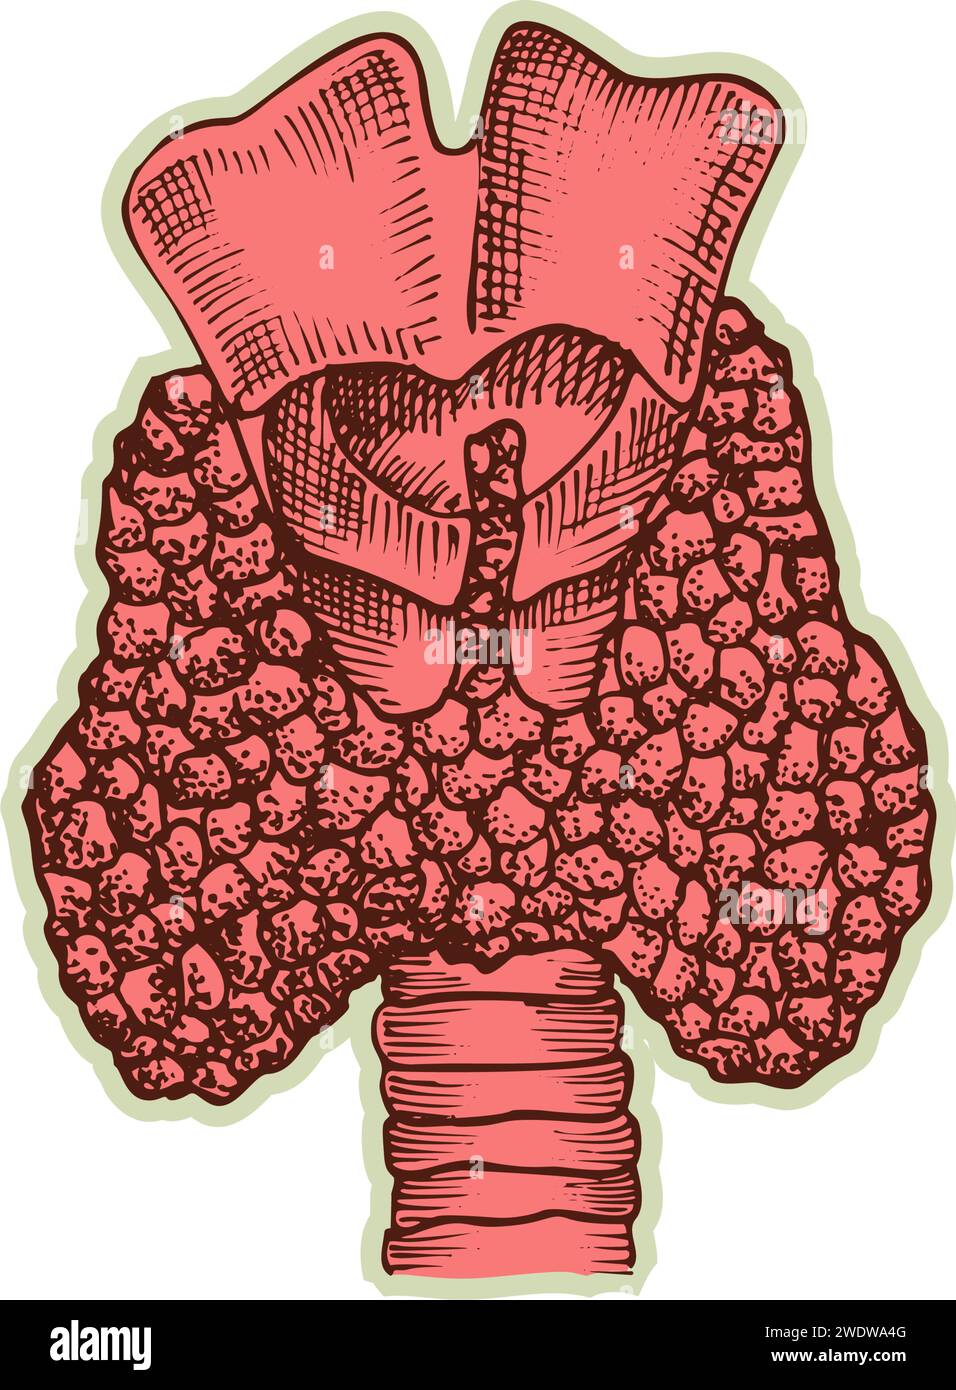 Autocollant de coeur humain. Vintage anatomie gravure organe esquisse isolé sur fond blanc. Bonne idée pour la conception rétro de l'affiche de médecine à la main dessinée Illustration de Vecteur